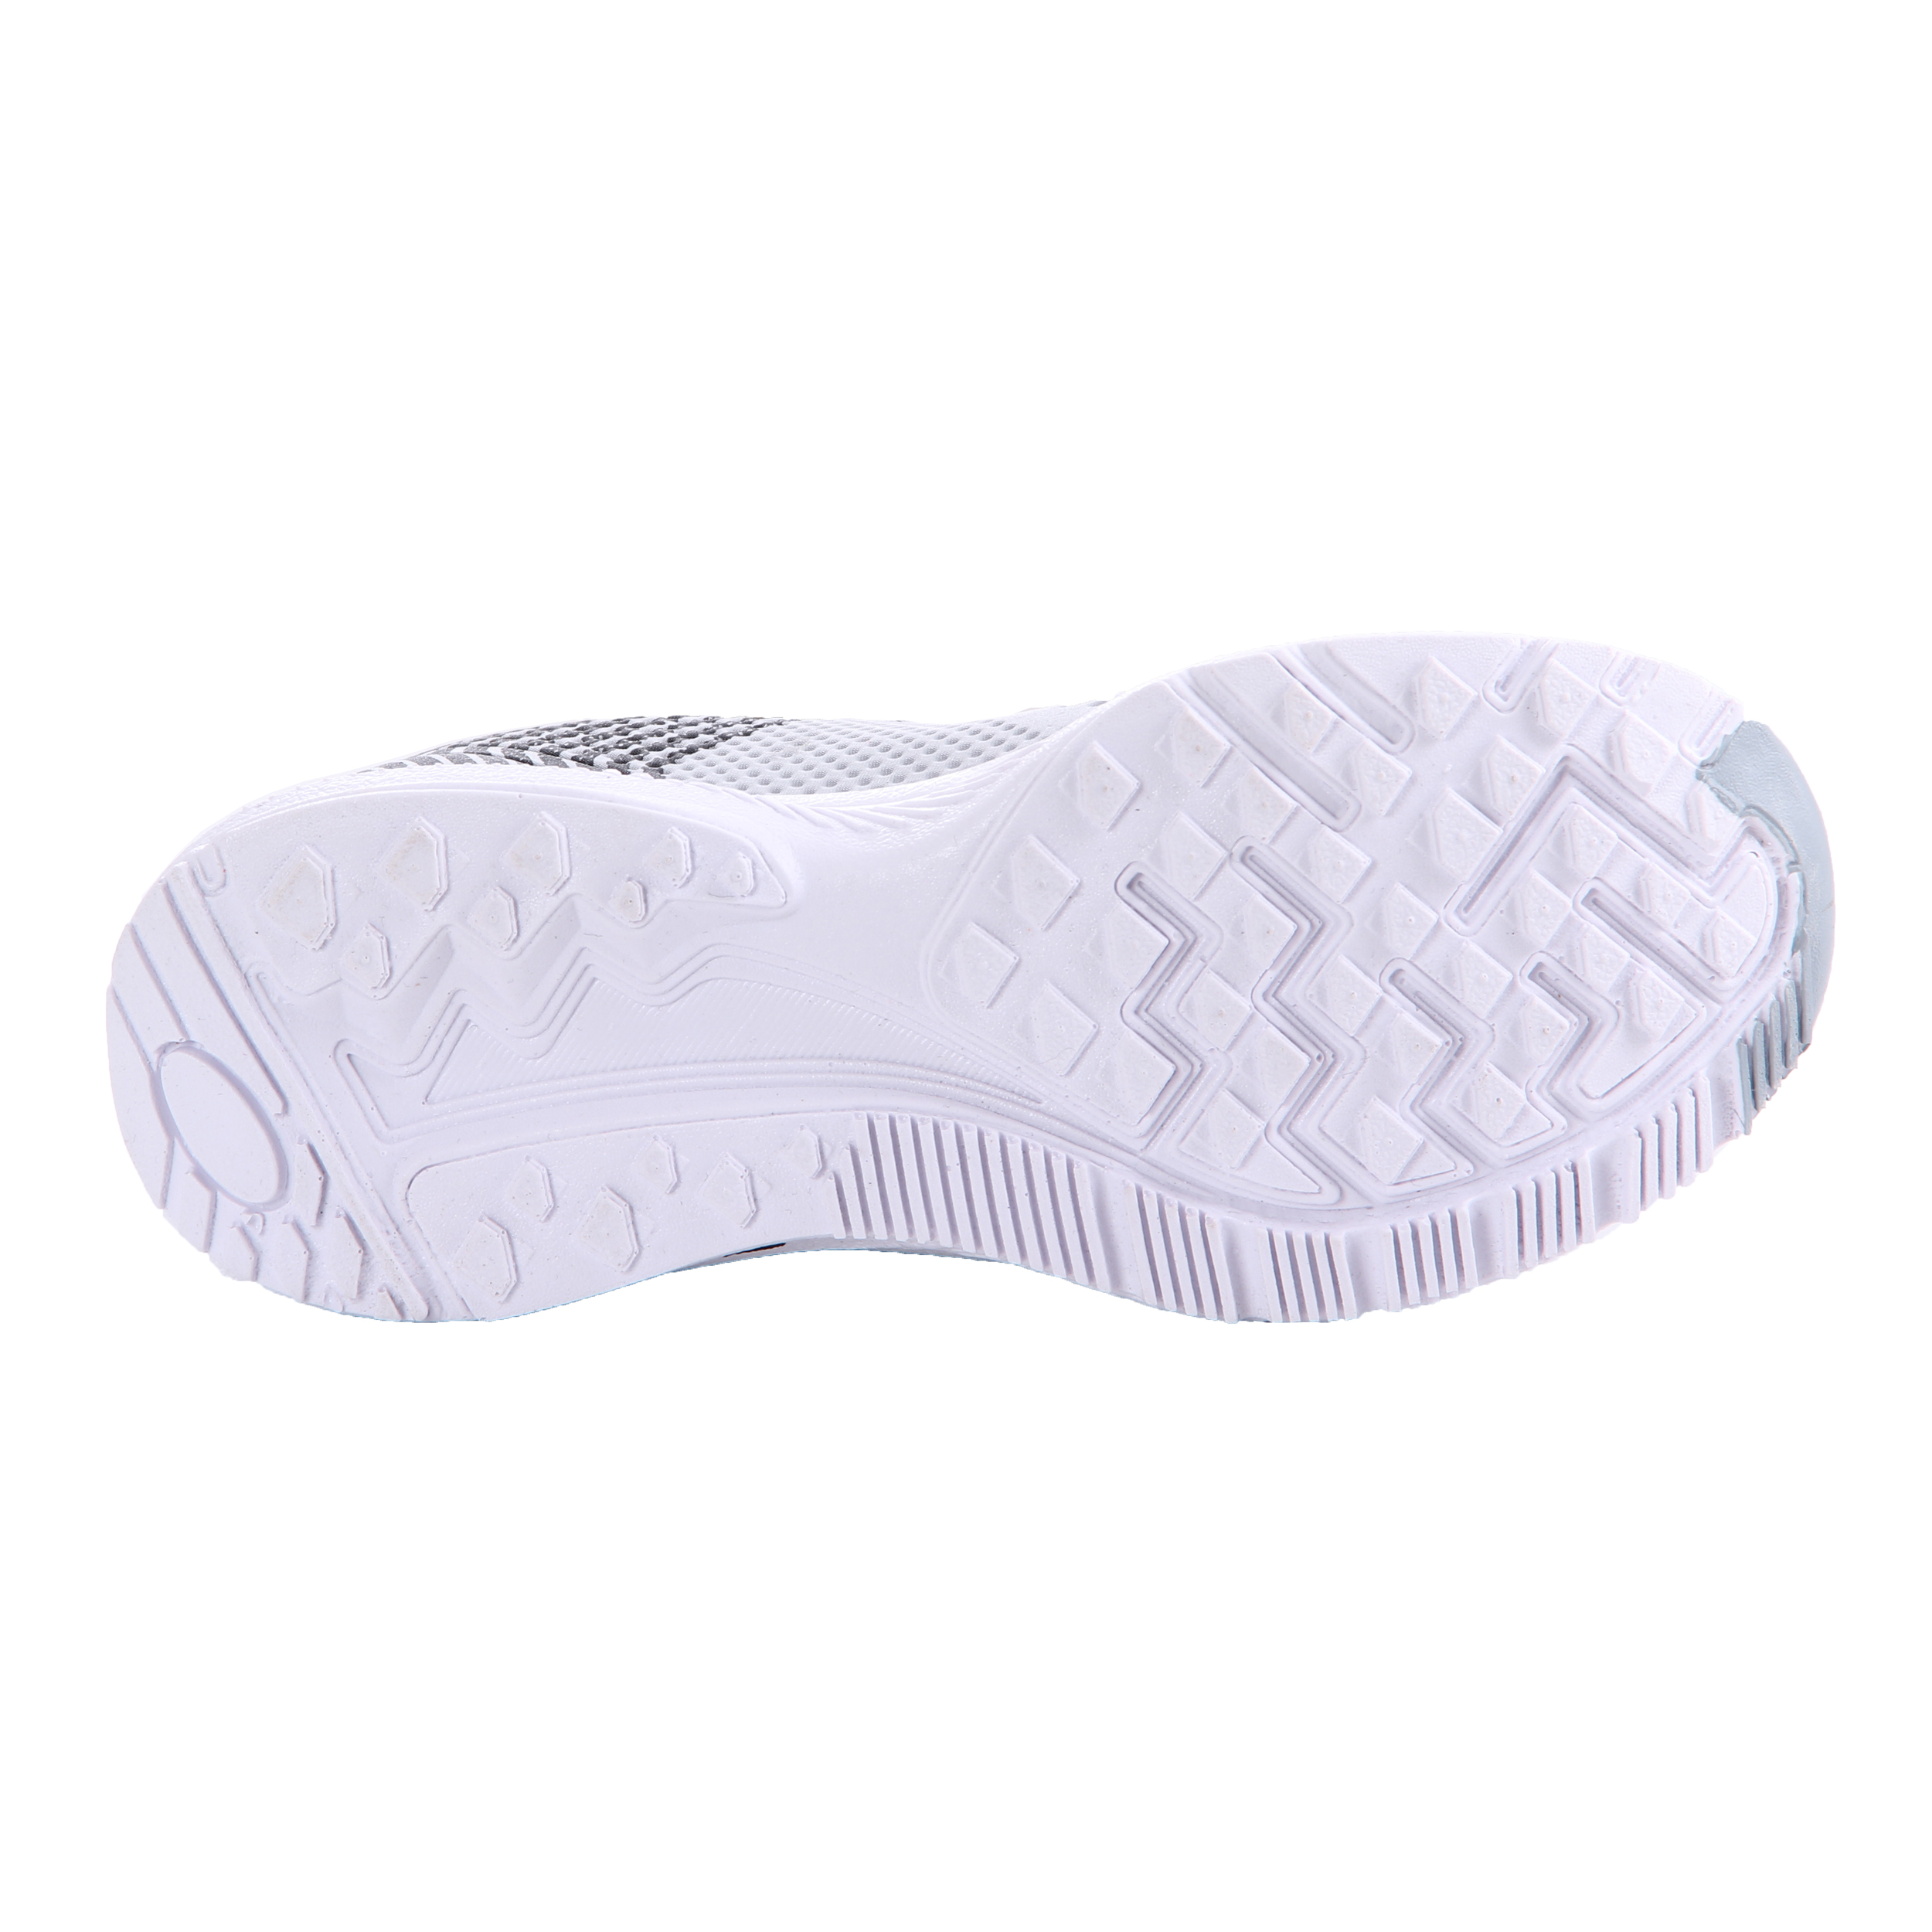   کفش مخصوص پیاده روی زنانه کد 15-P2400040